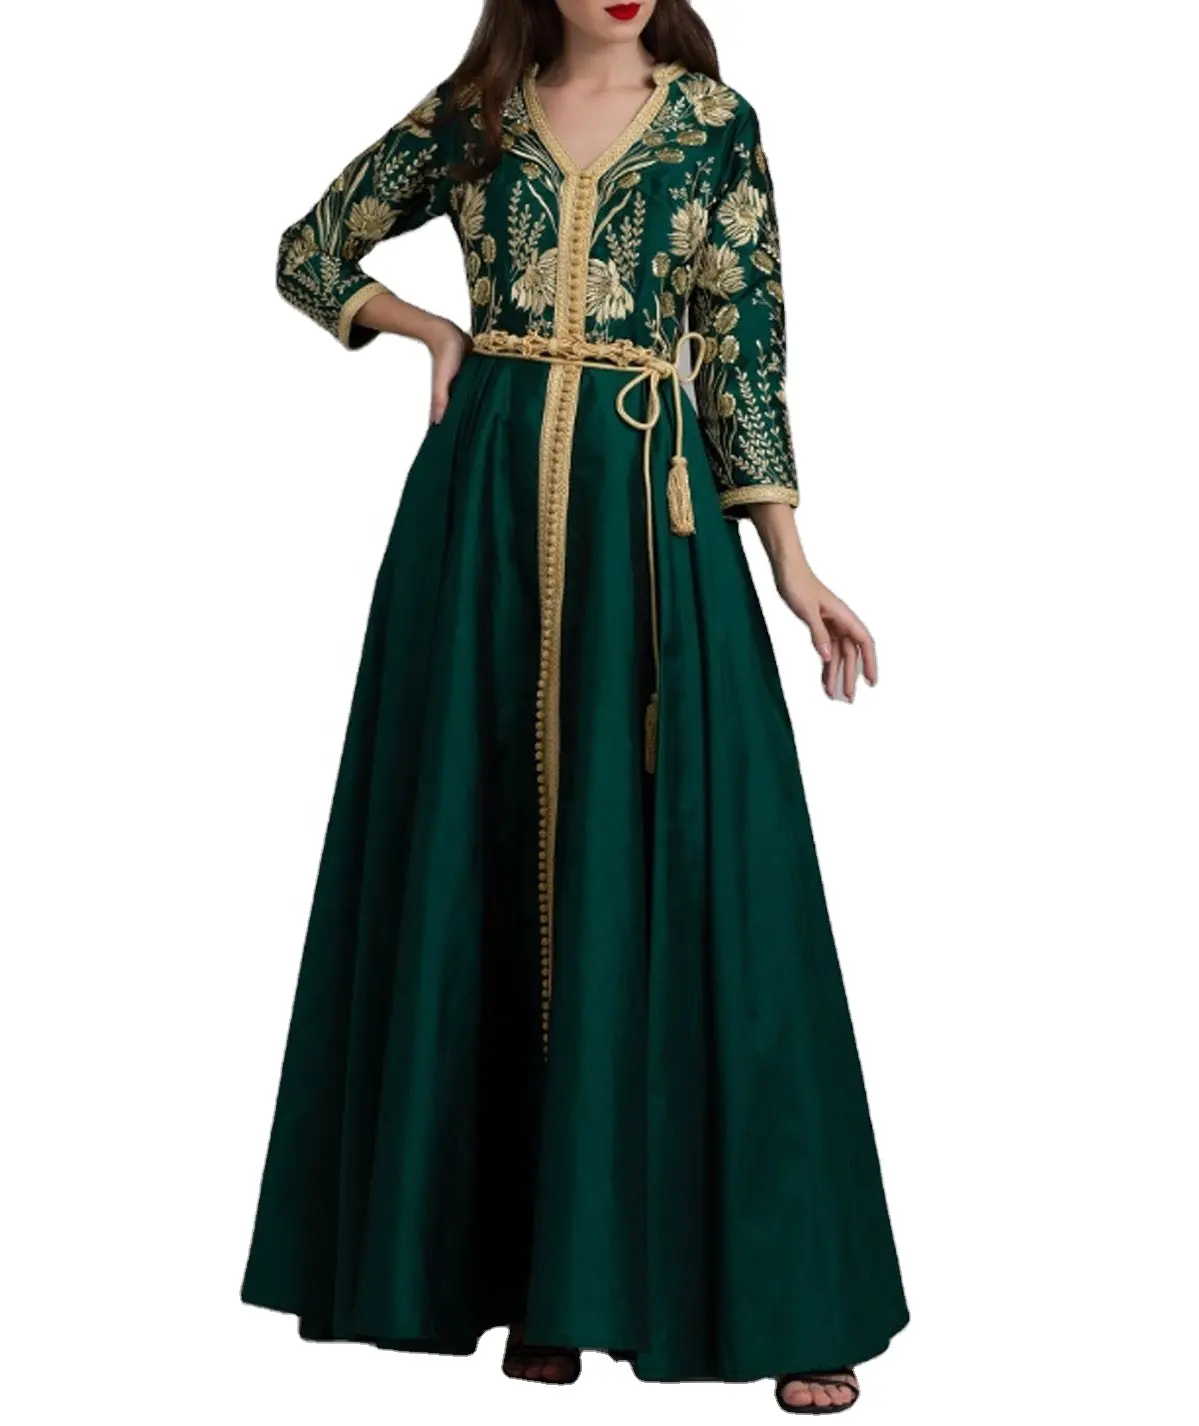 Robe marocaine verte, bouteille d'eau, avec broderie dorée